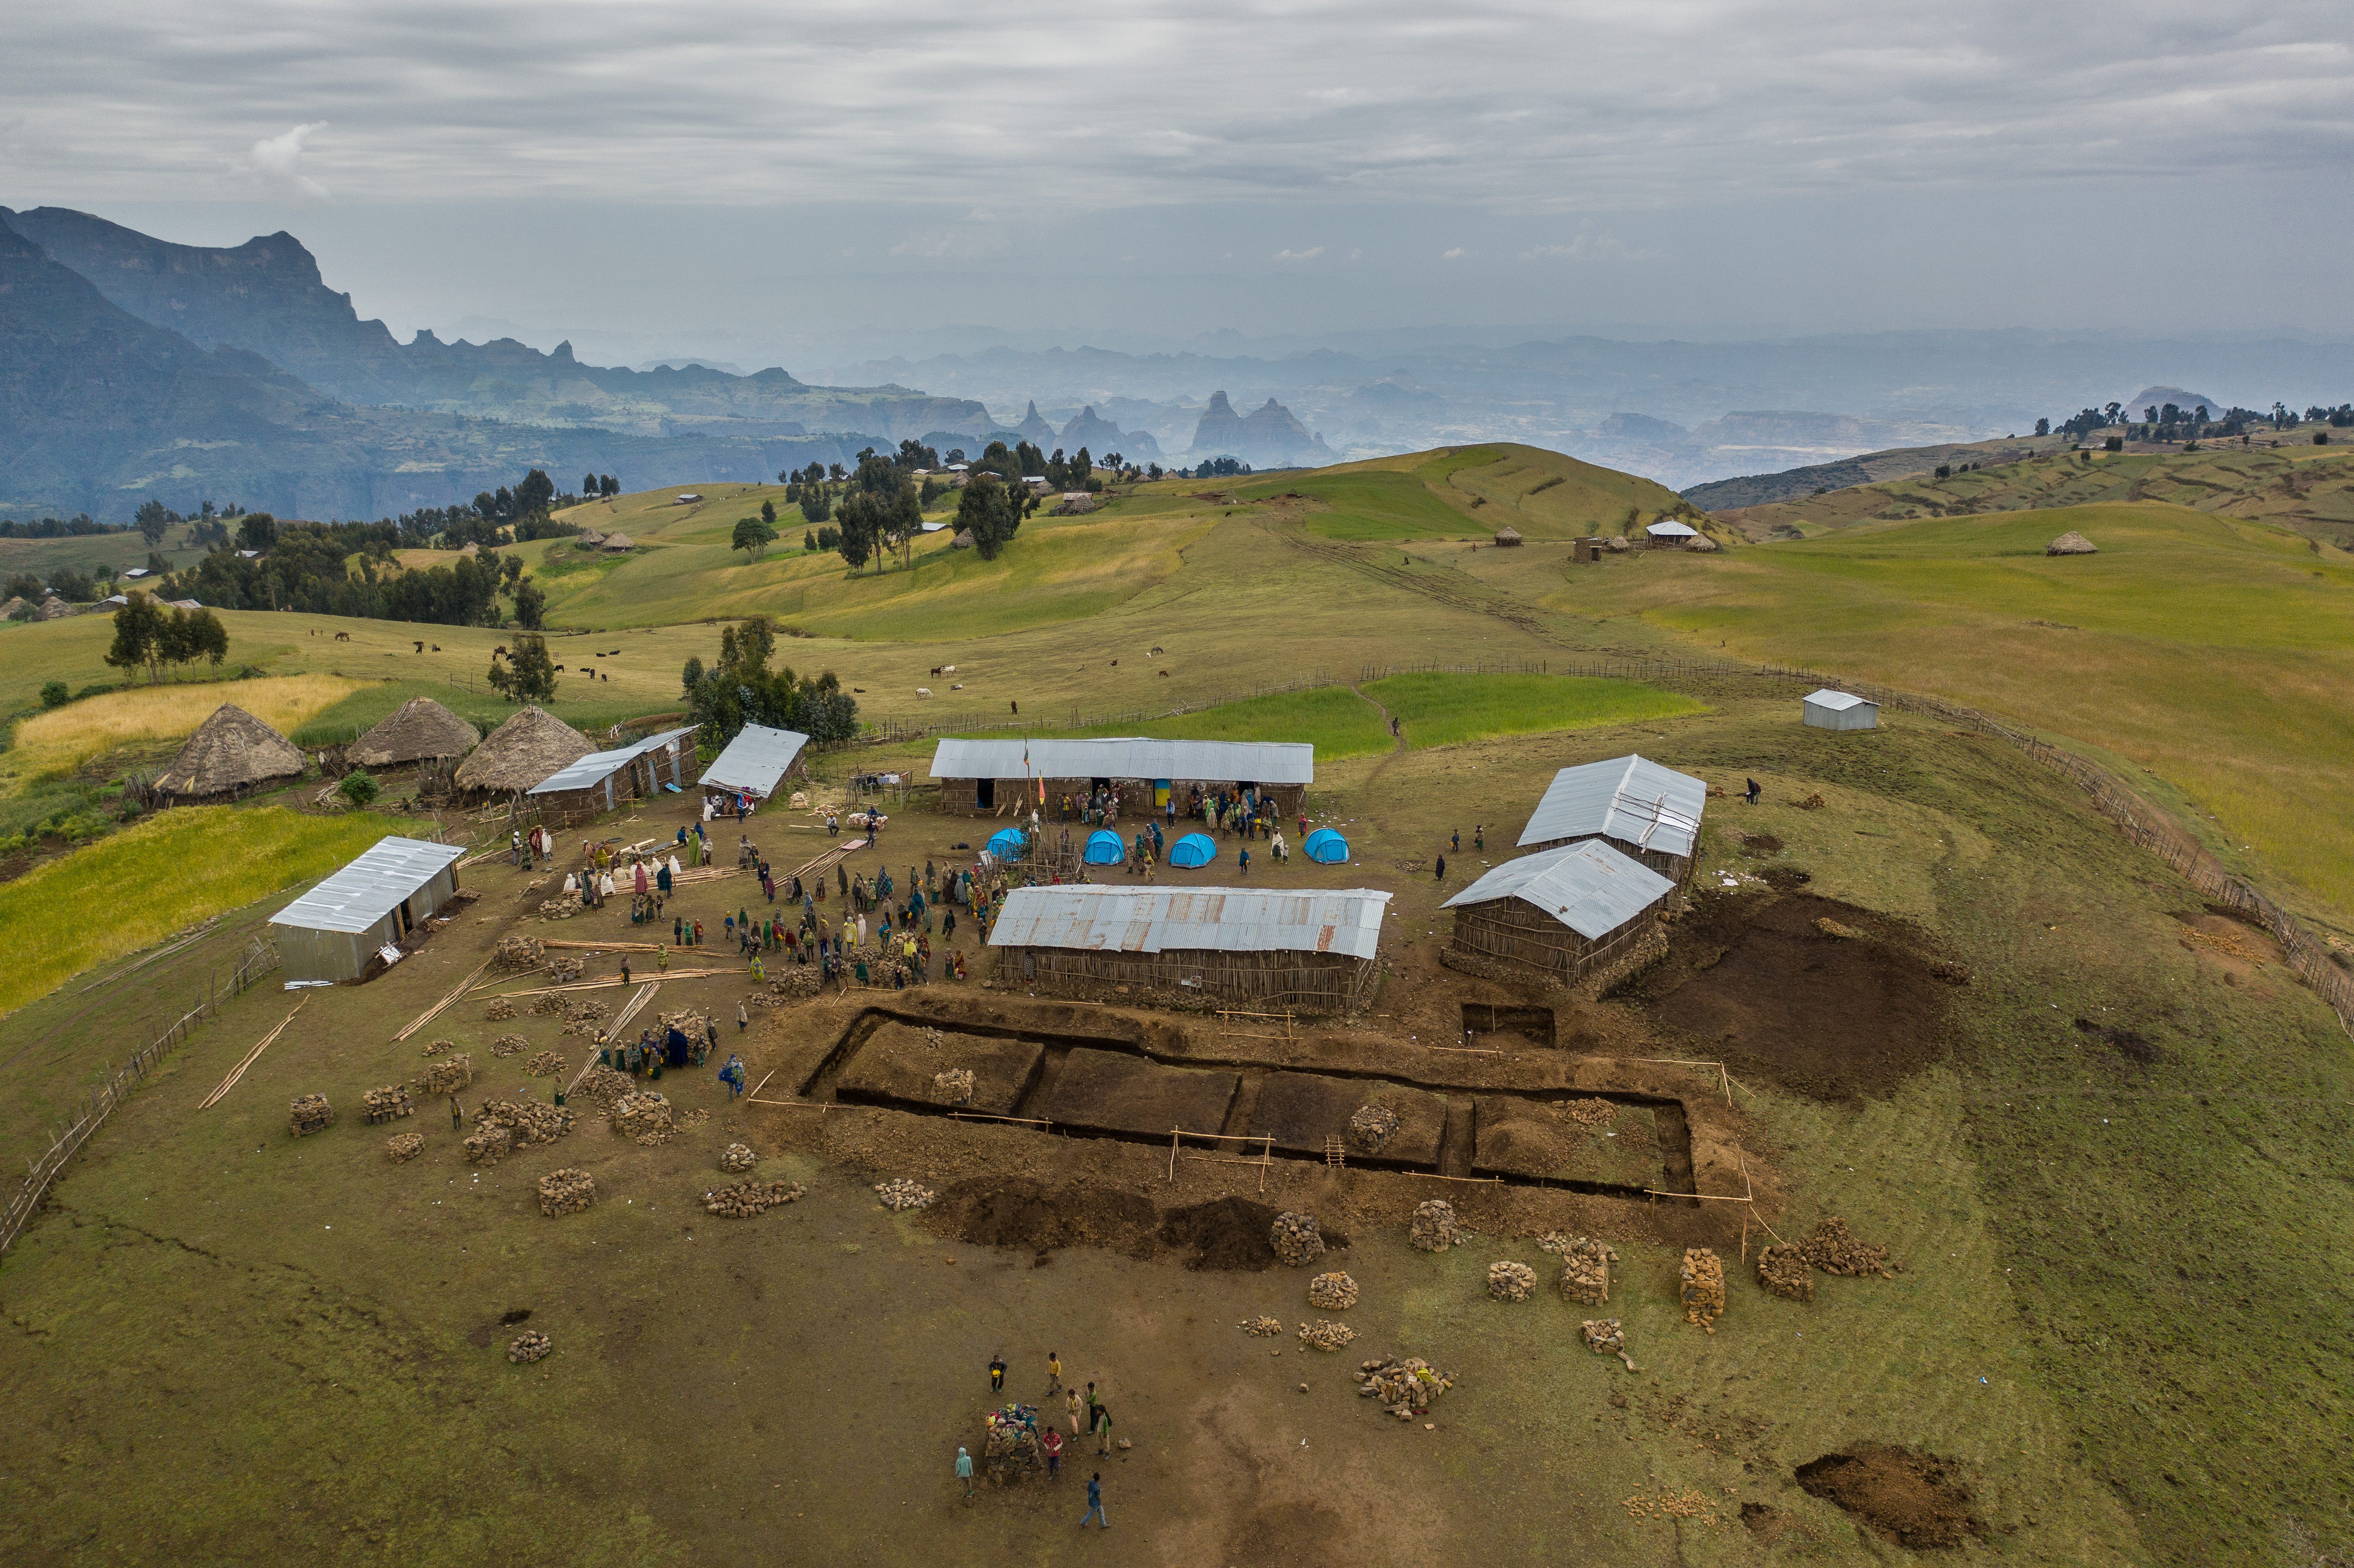 Sona, Simien Ethiopia school construction